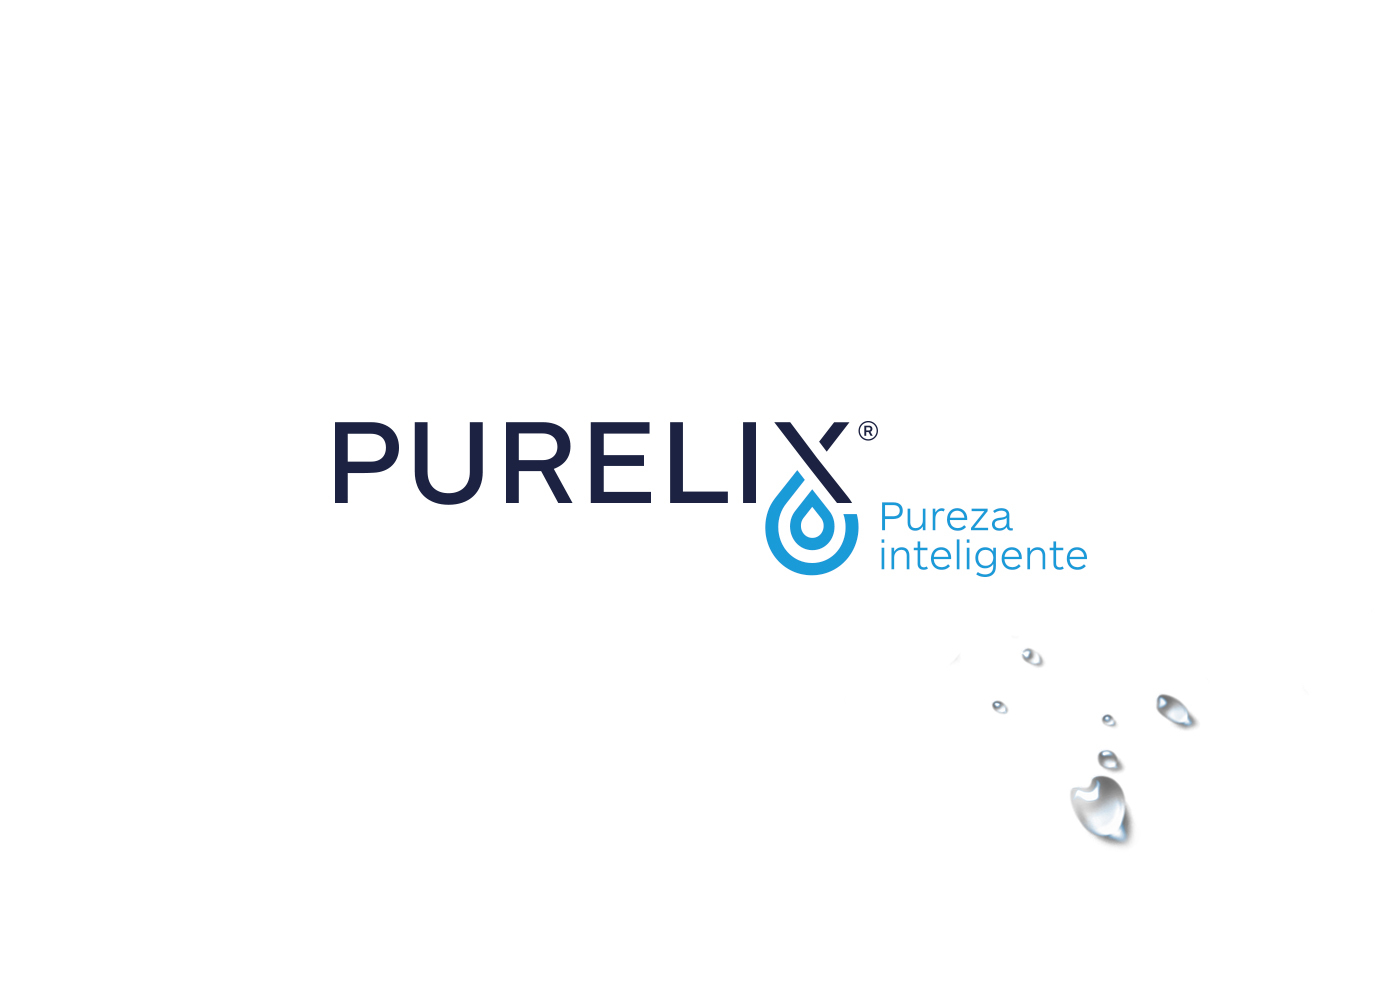 Creación de logo Purelix